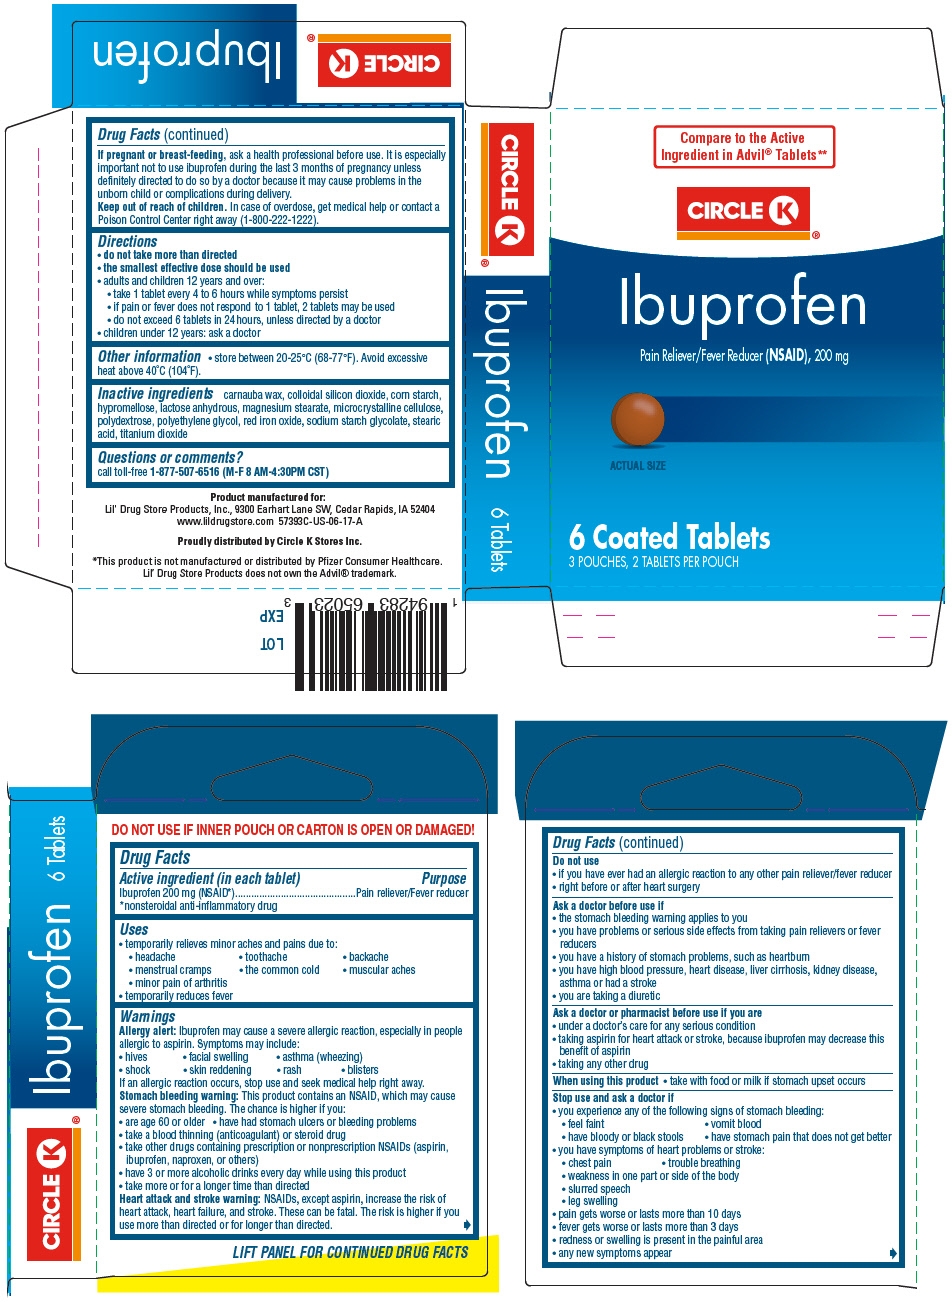 PRINCIPAL DISPLAY PANEL - 200 mg Tablet Pouch Carton